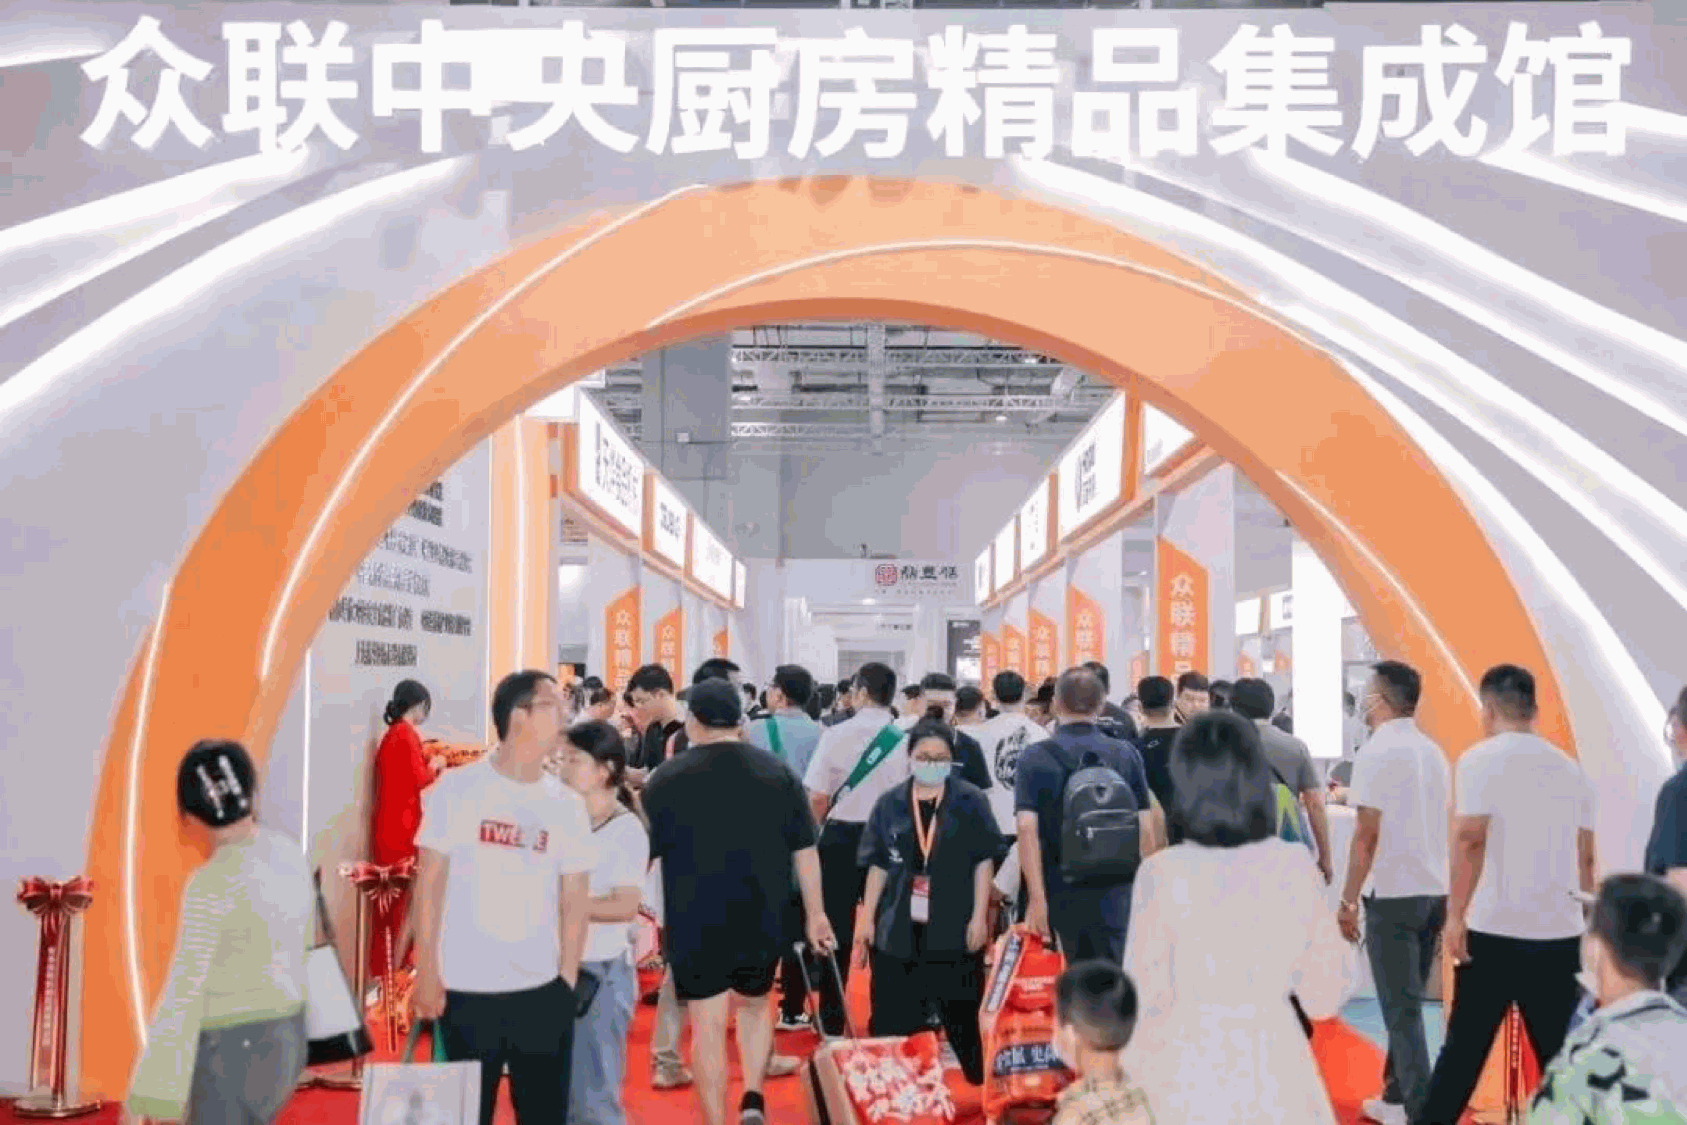 Wiskind participe à l’hotelex Shanghai Expo